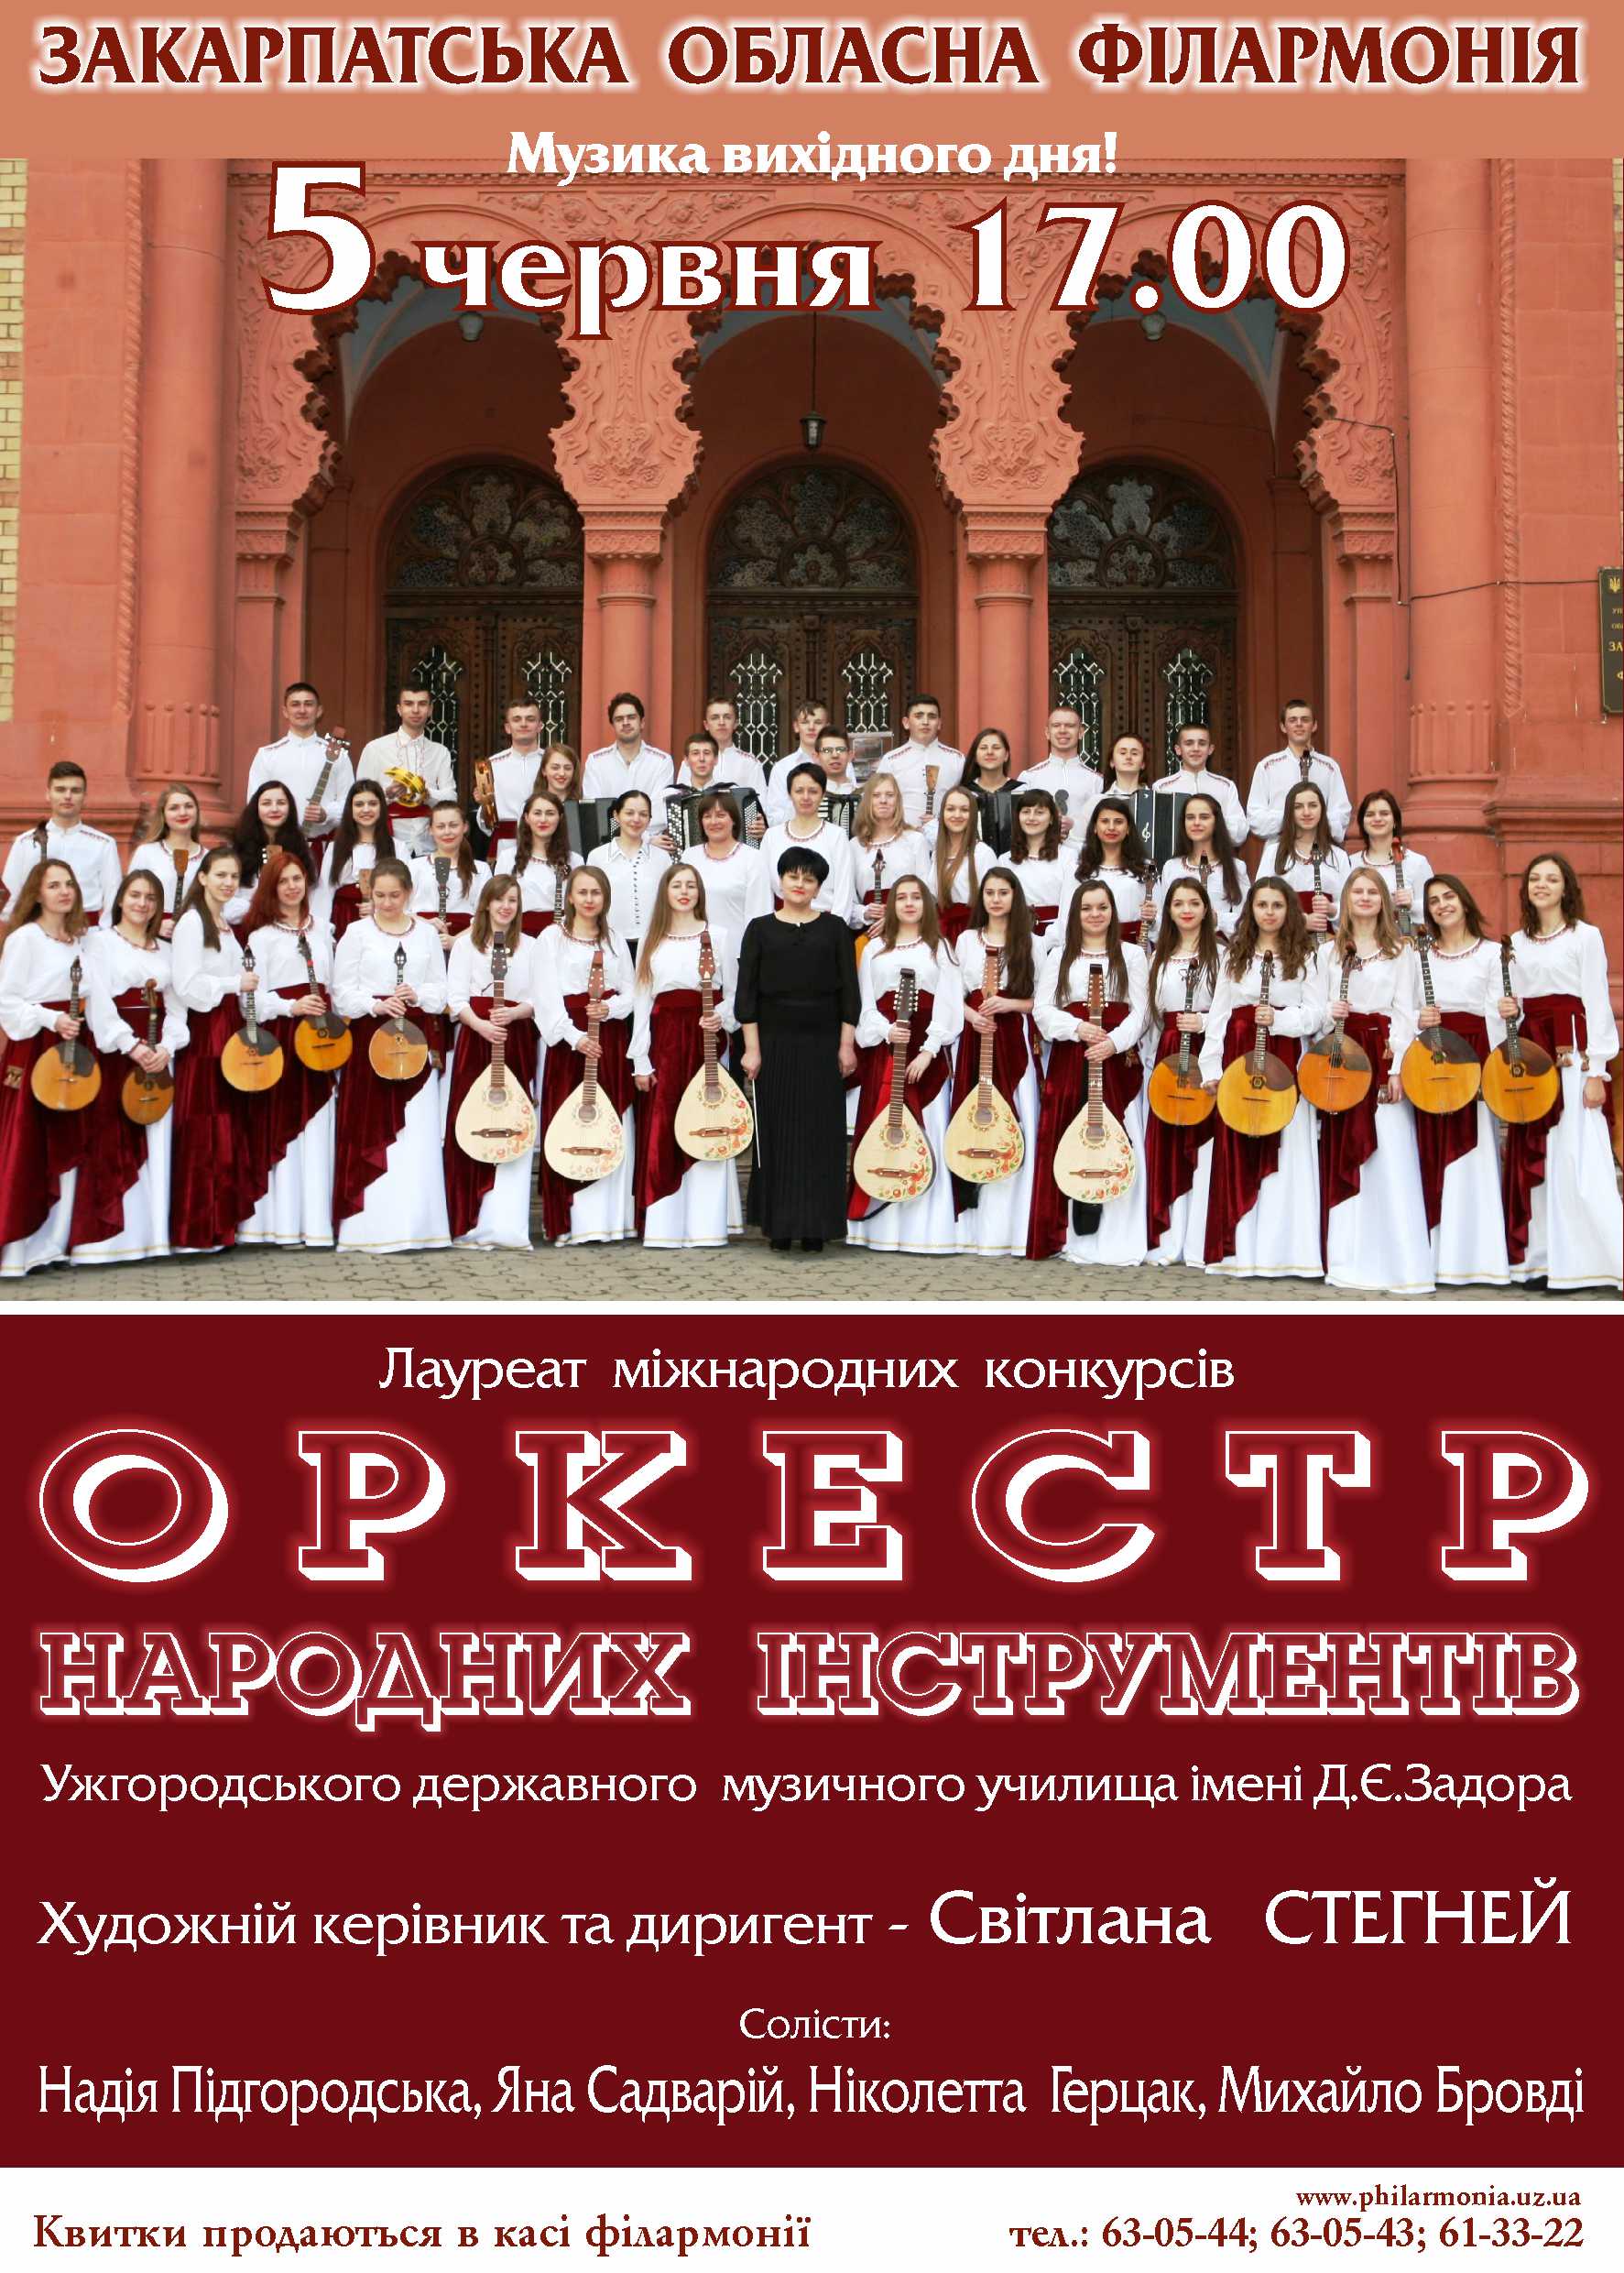 5 червня оркестр народних інструментів Ужгородського державного музичного училища імені Д.Є.Задора виступить із концертною програмою «Тиса» у Закарпатській обласній філармонії. 